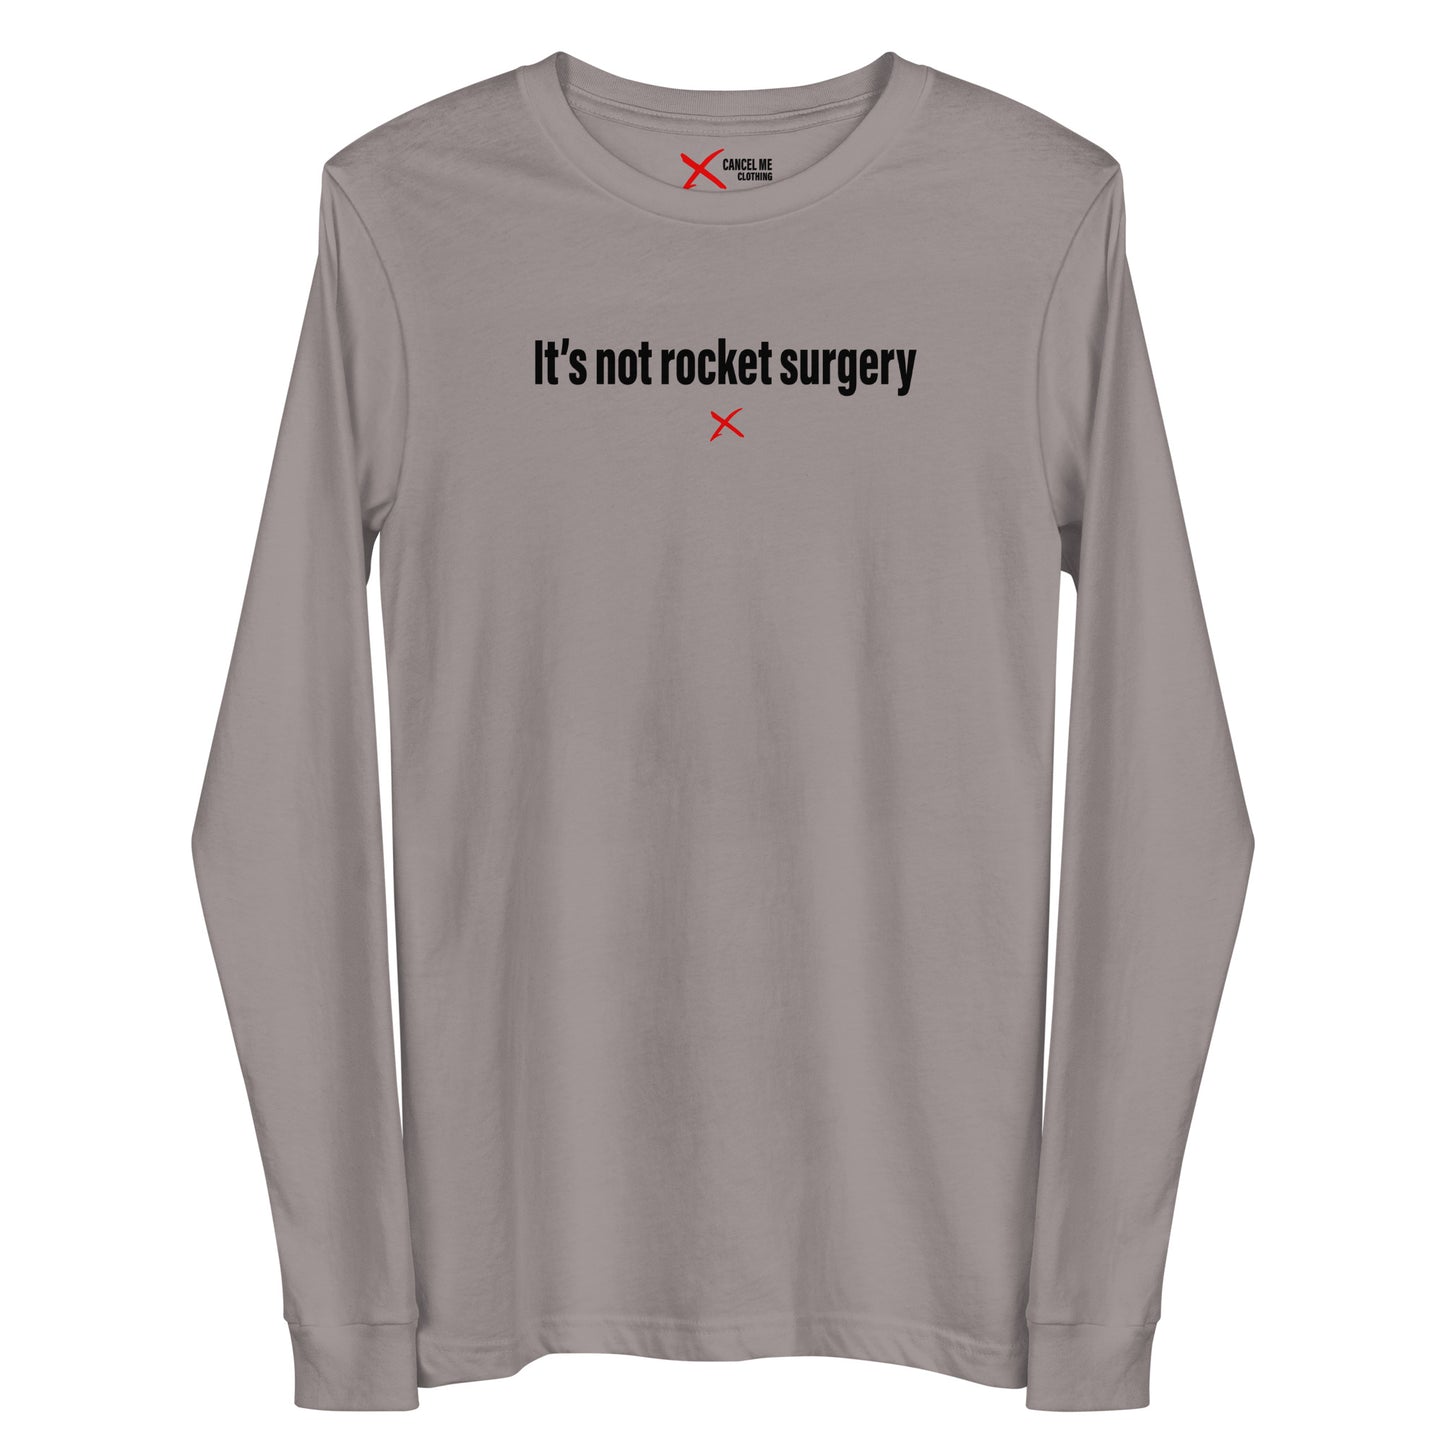 It's not rocket surgery - Longsleeve